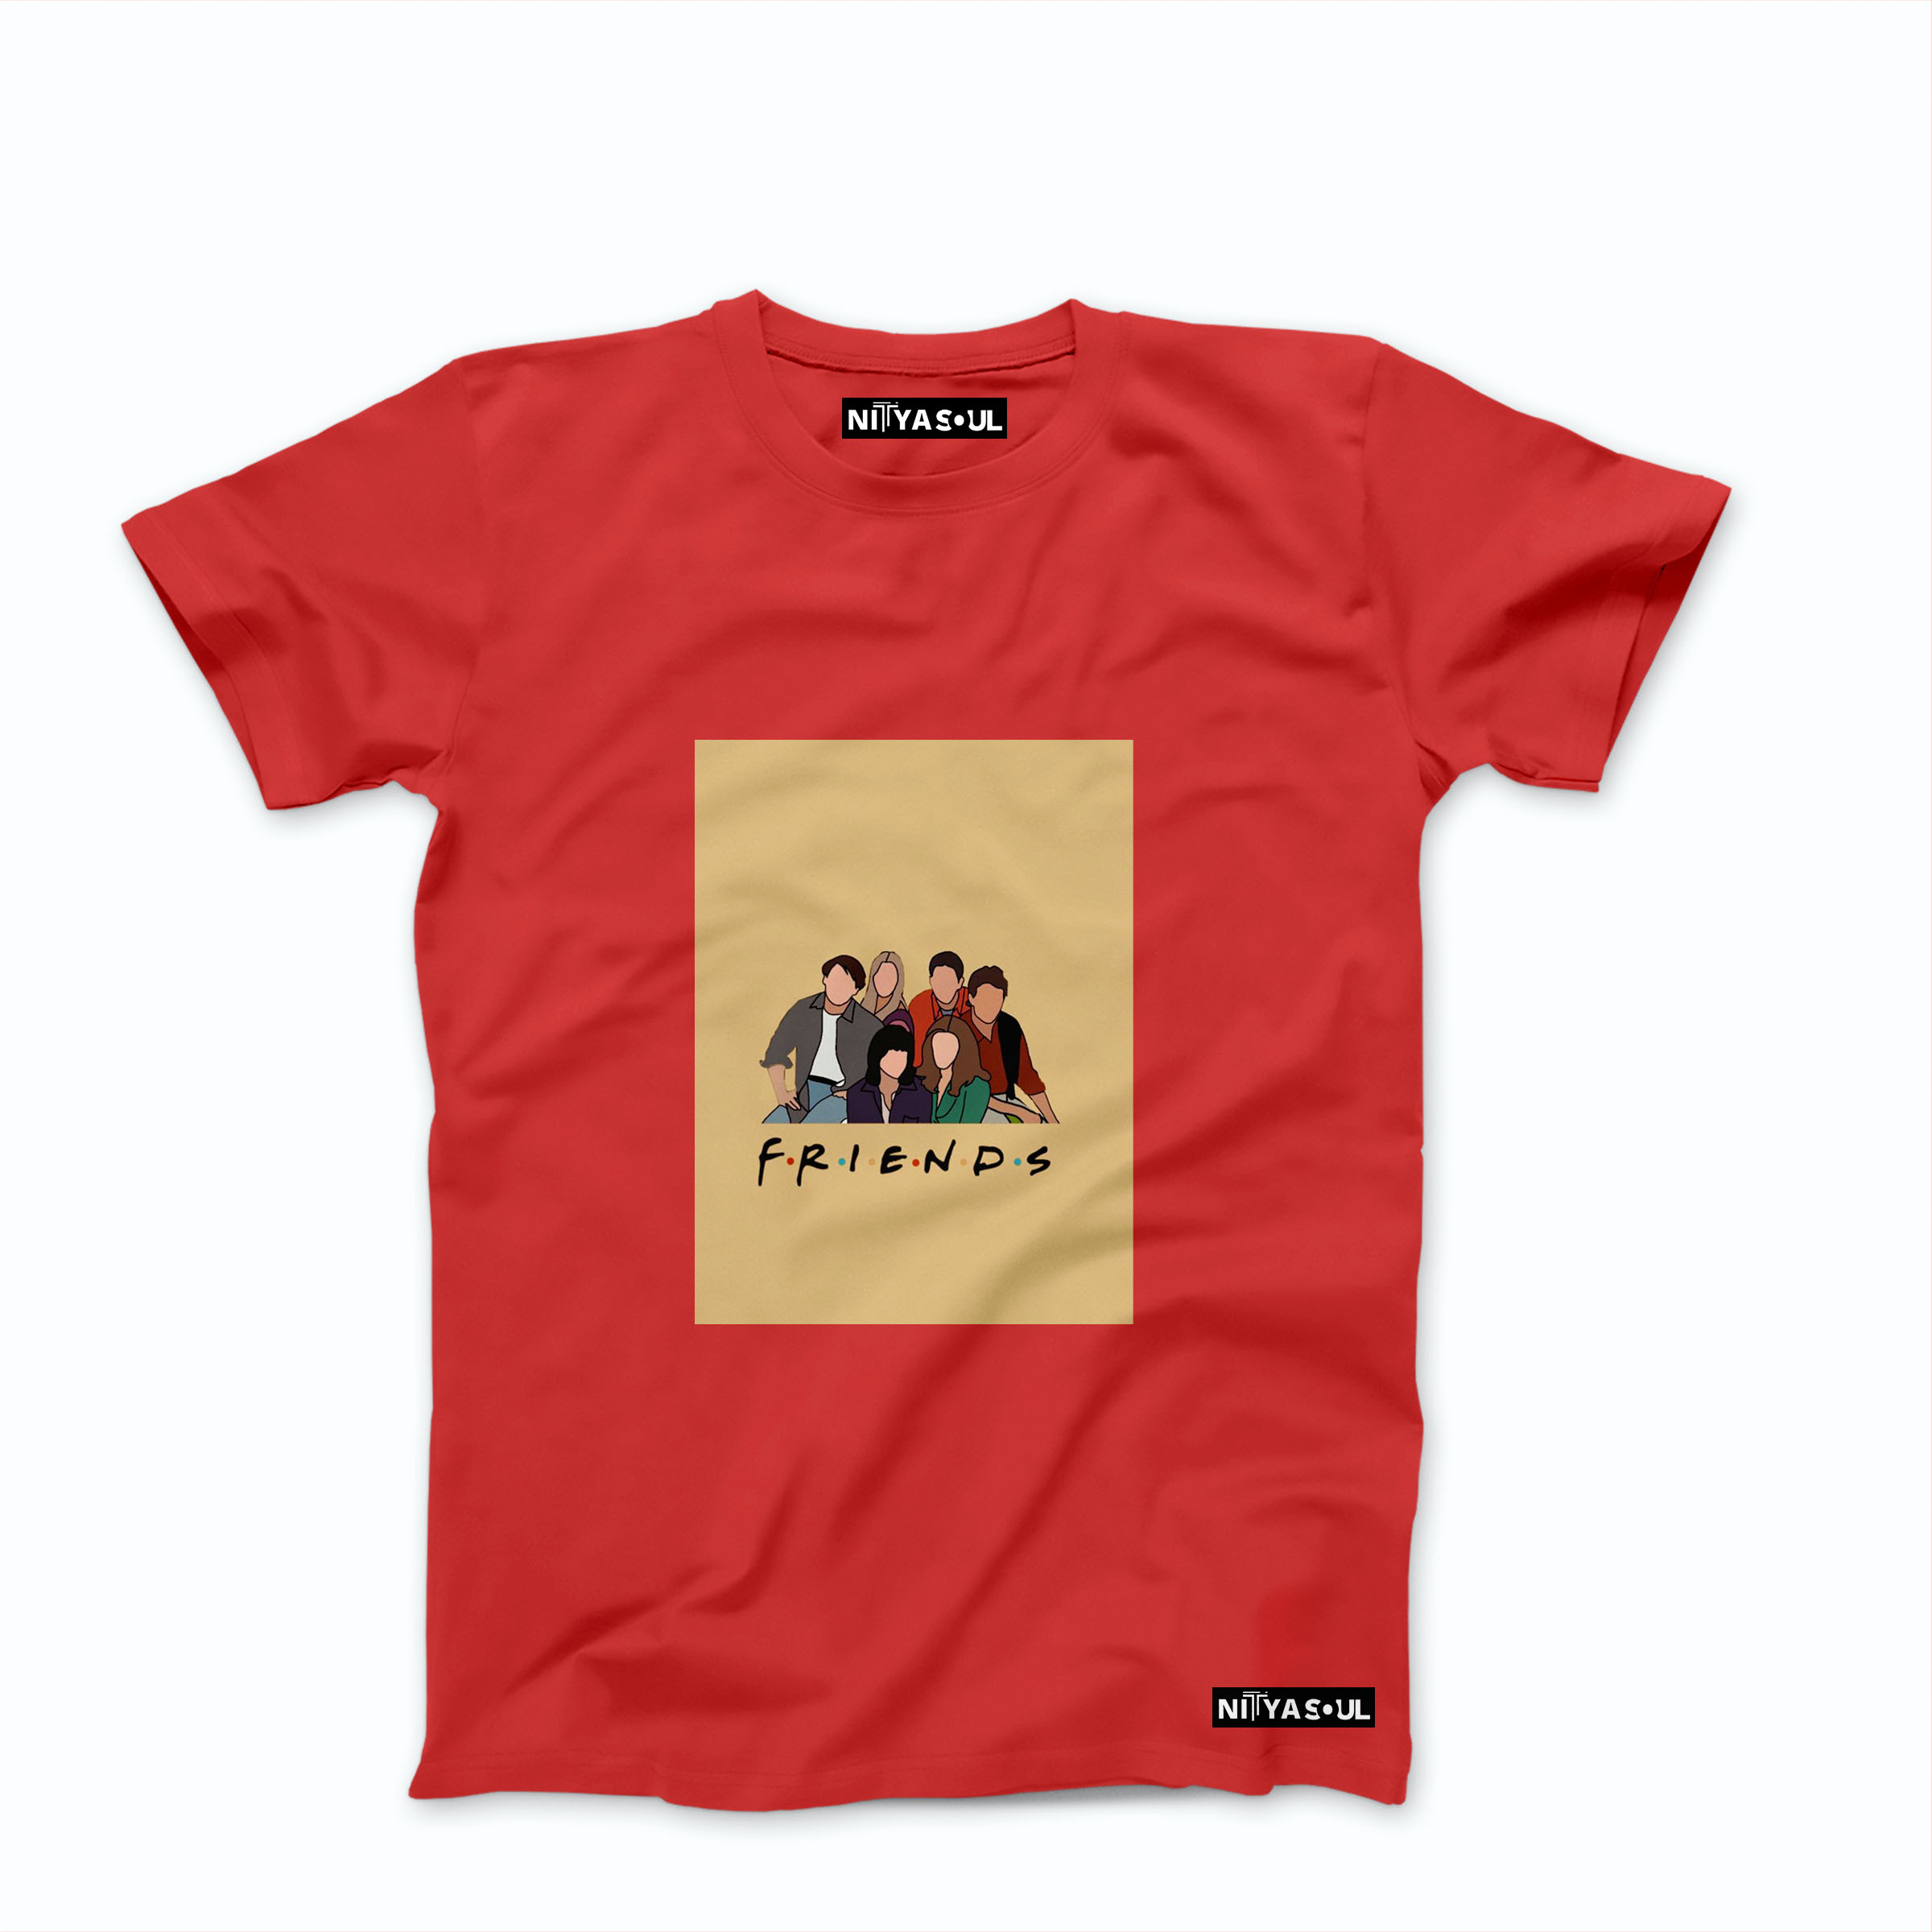 Friends T-shirt